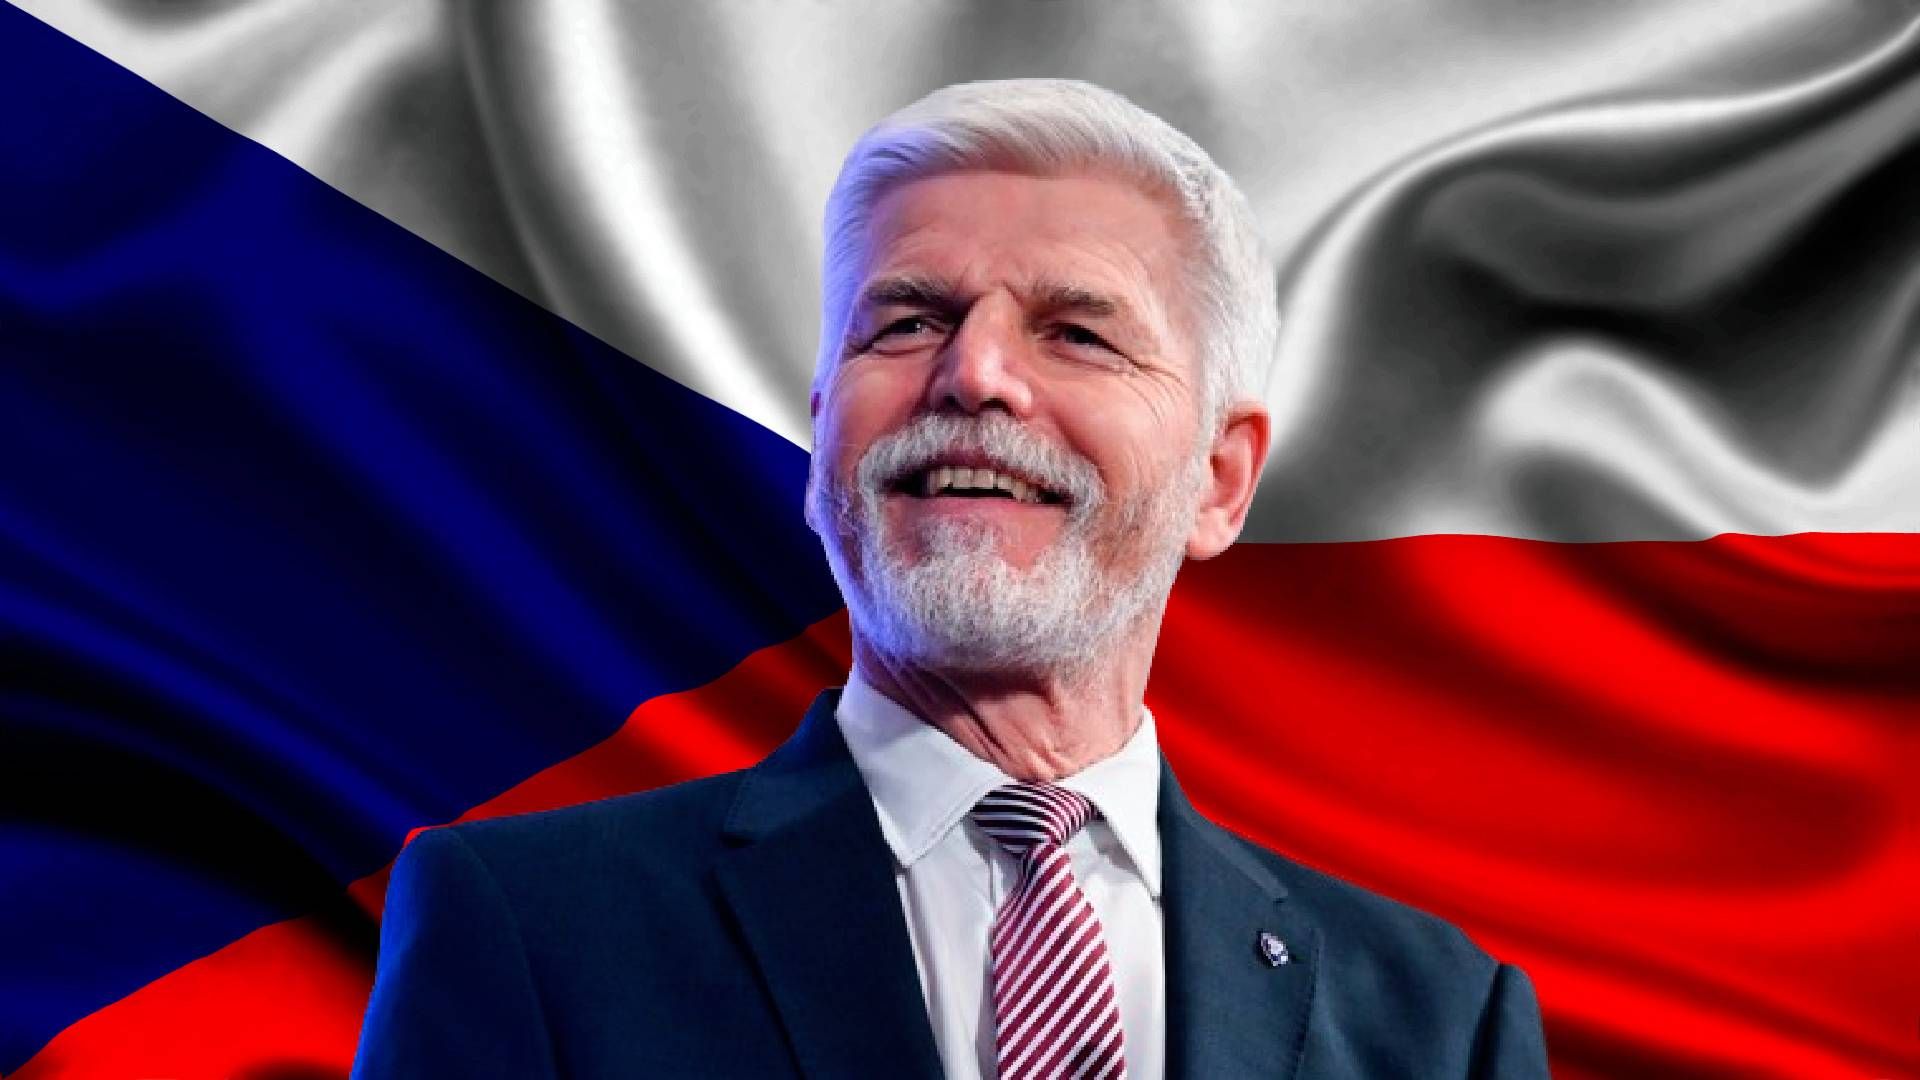 Петр Павел - что известно о новом президенте Чехии